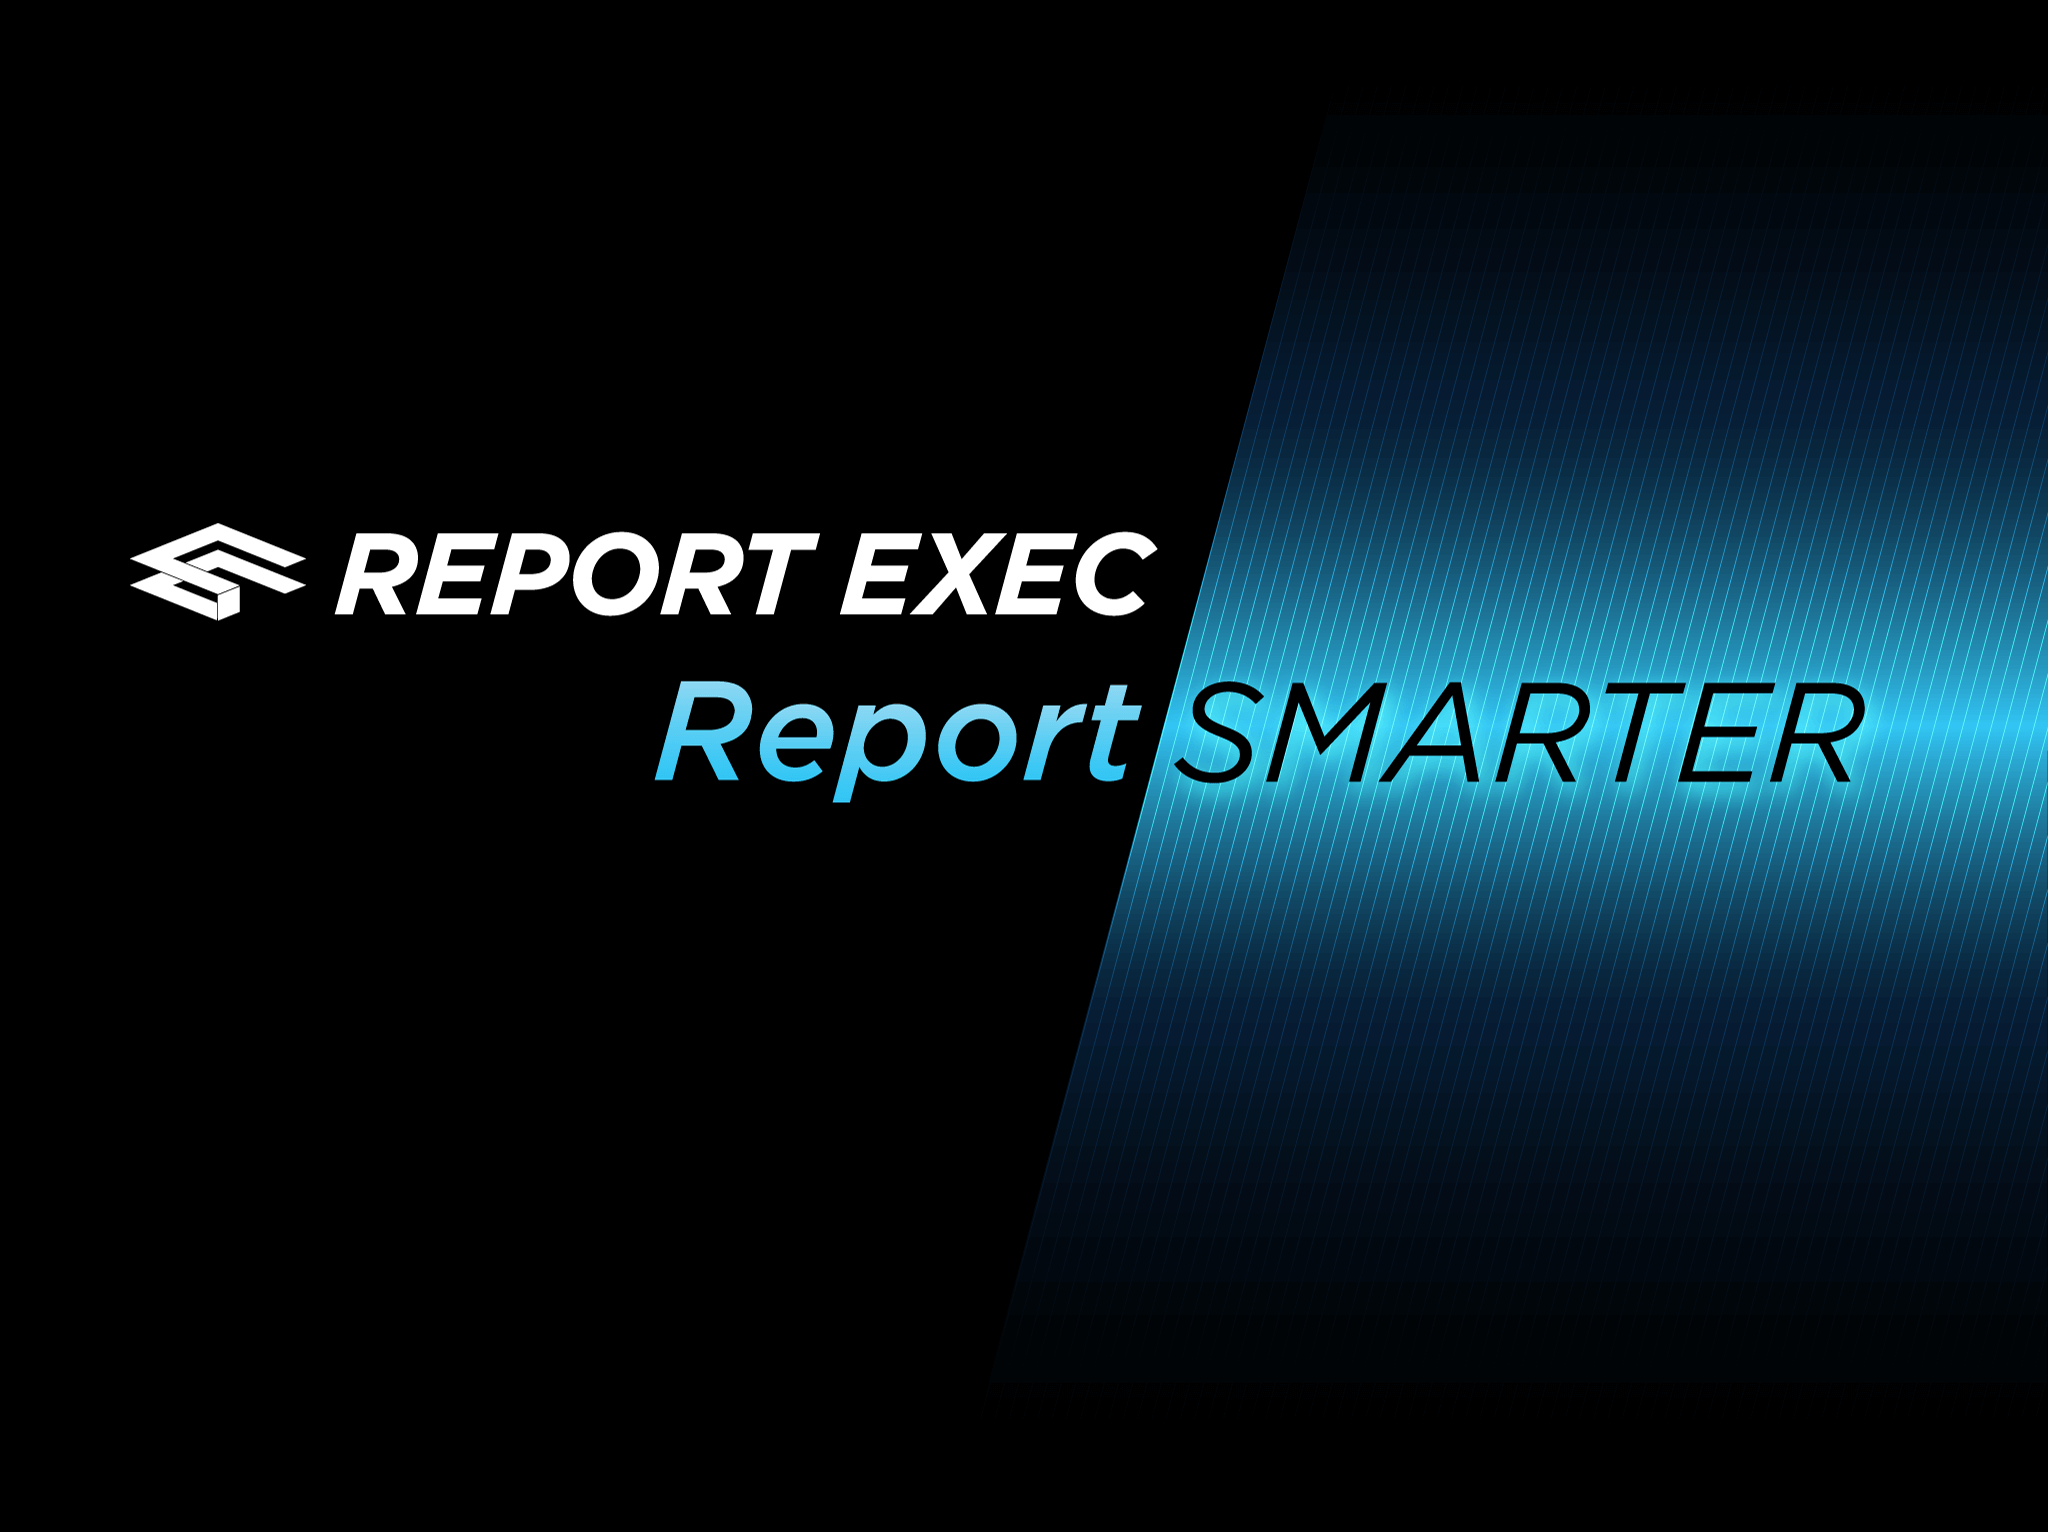 Report Exec